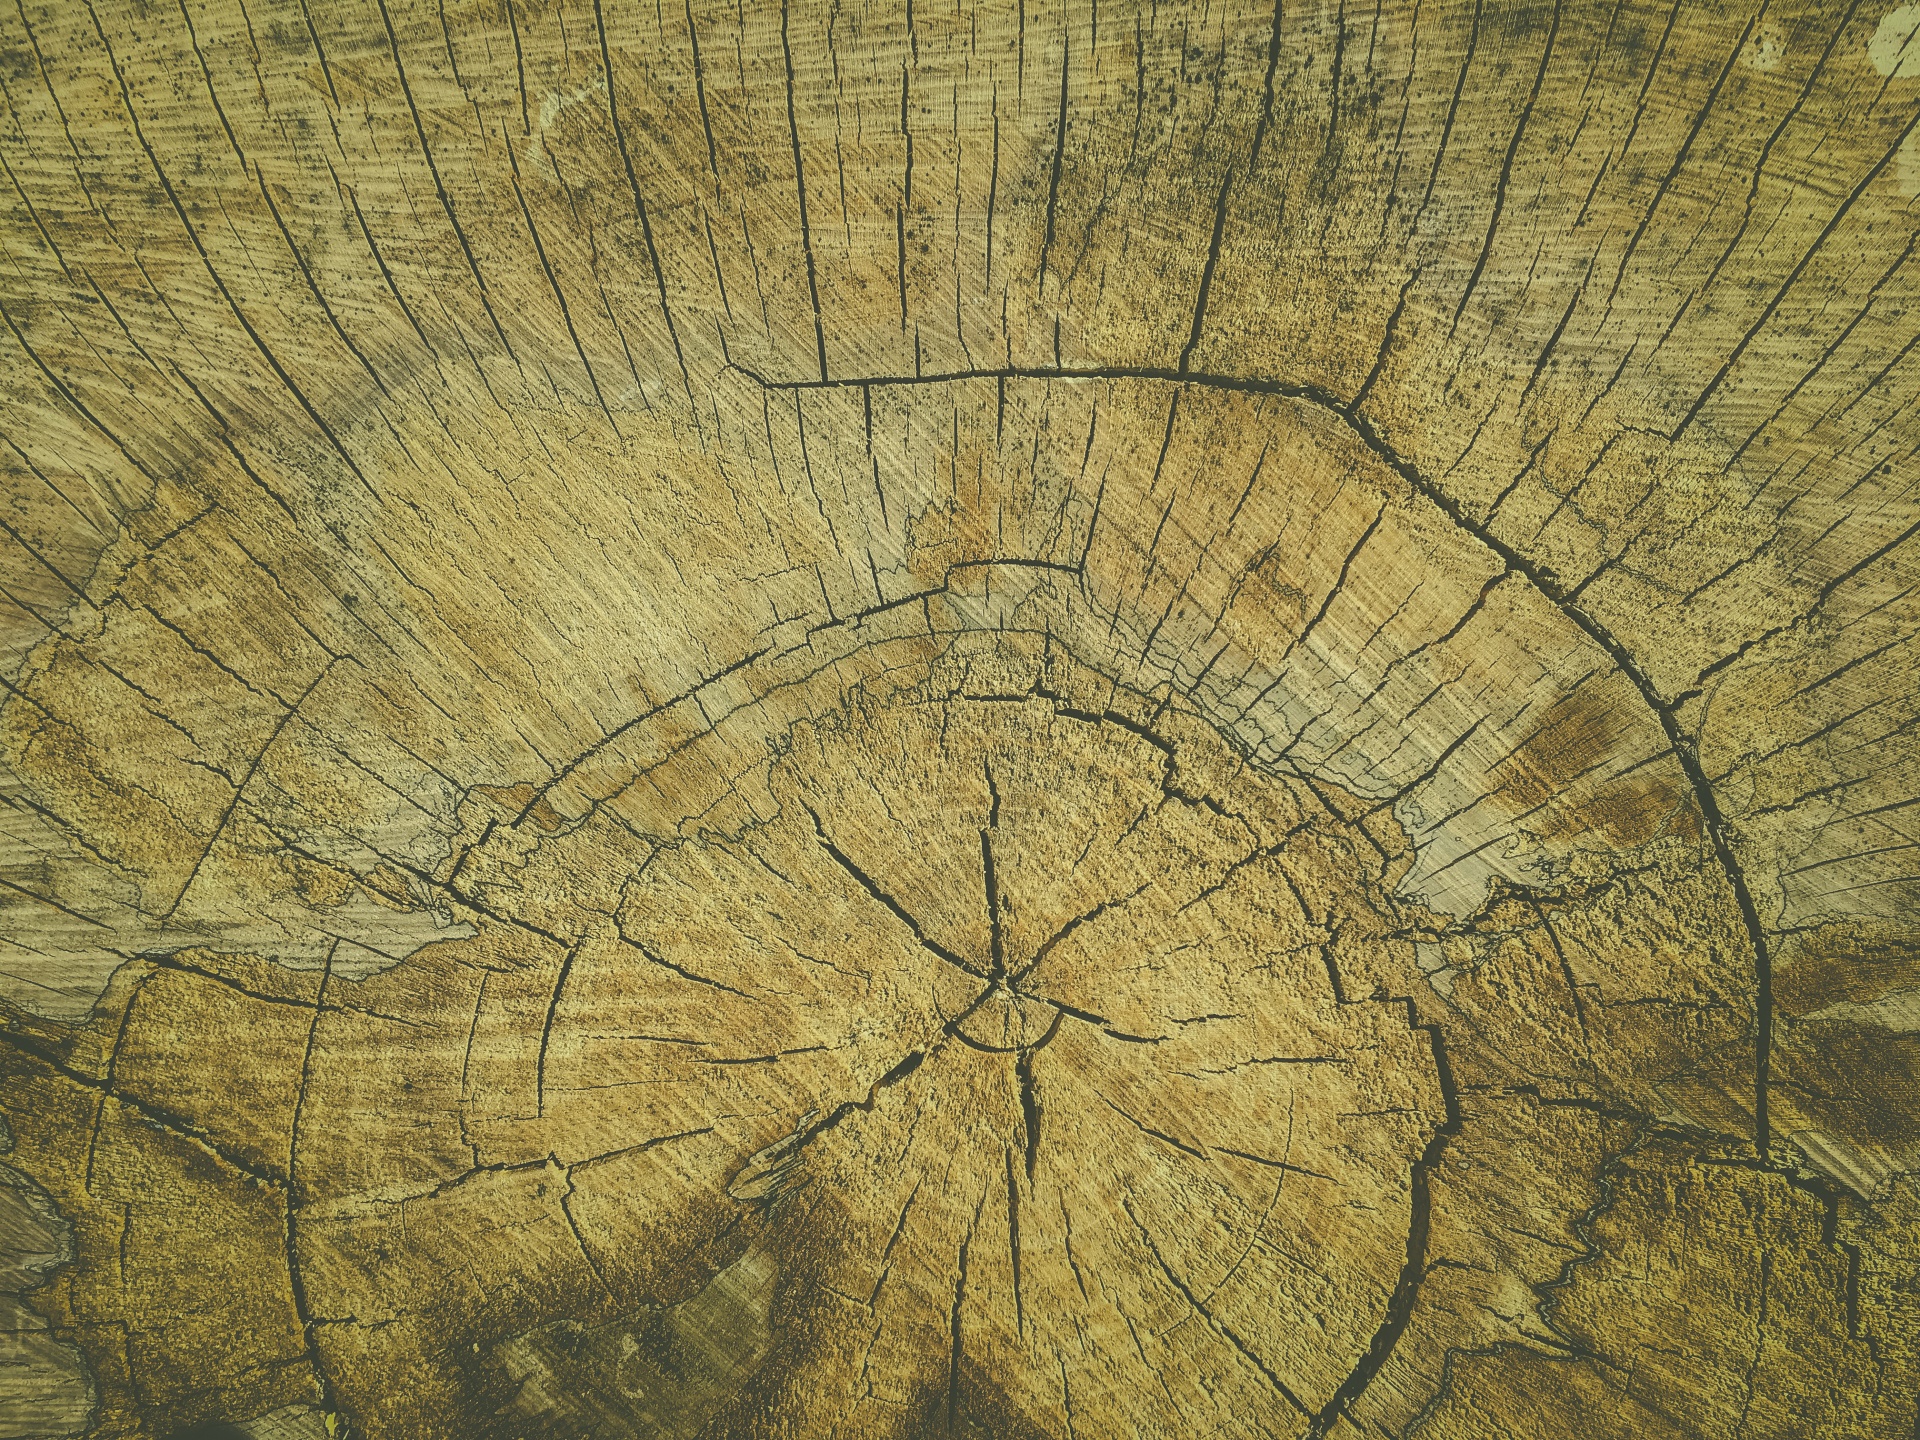 Cut Wood Texture